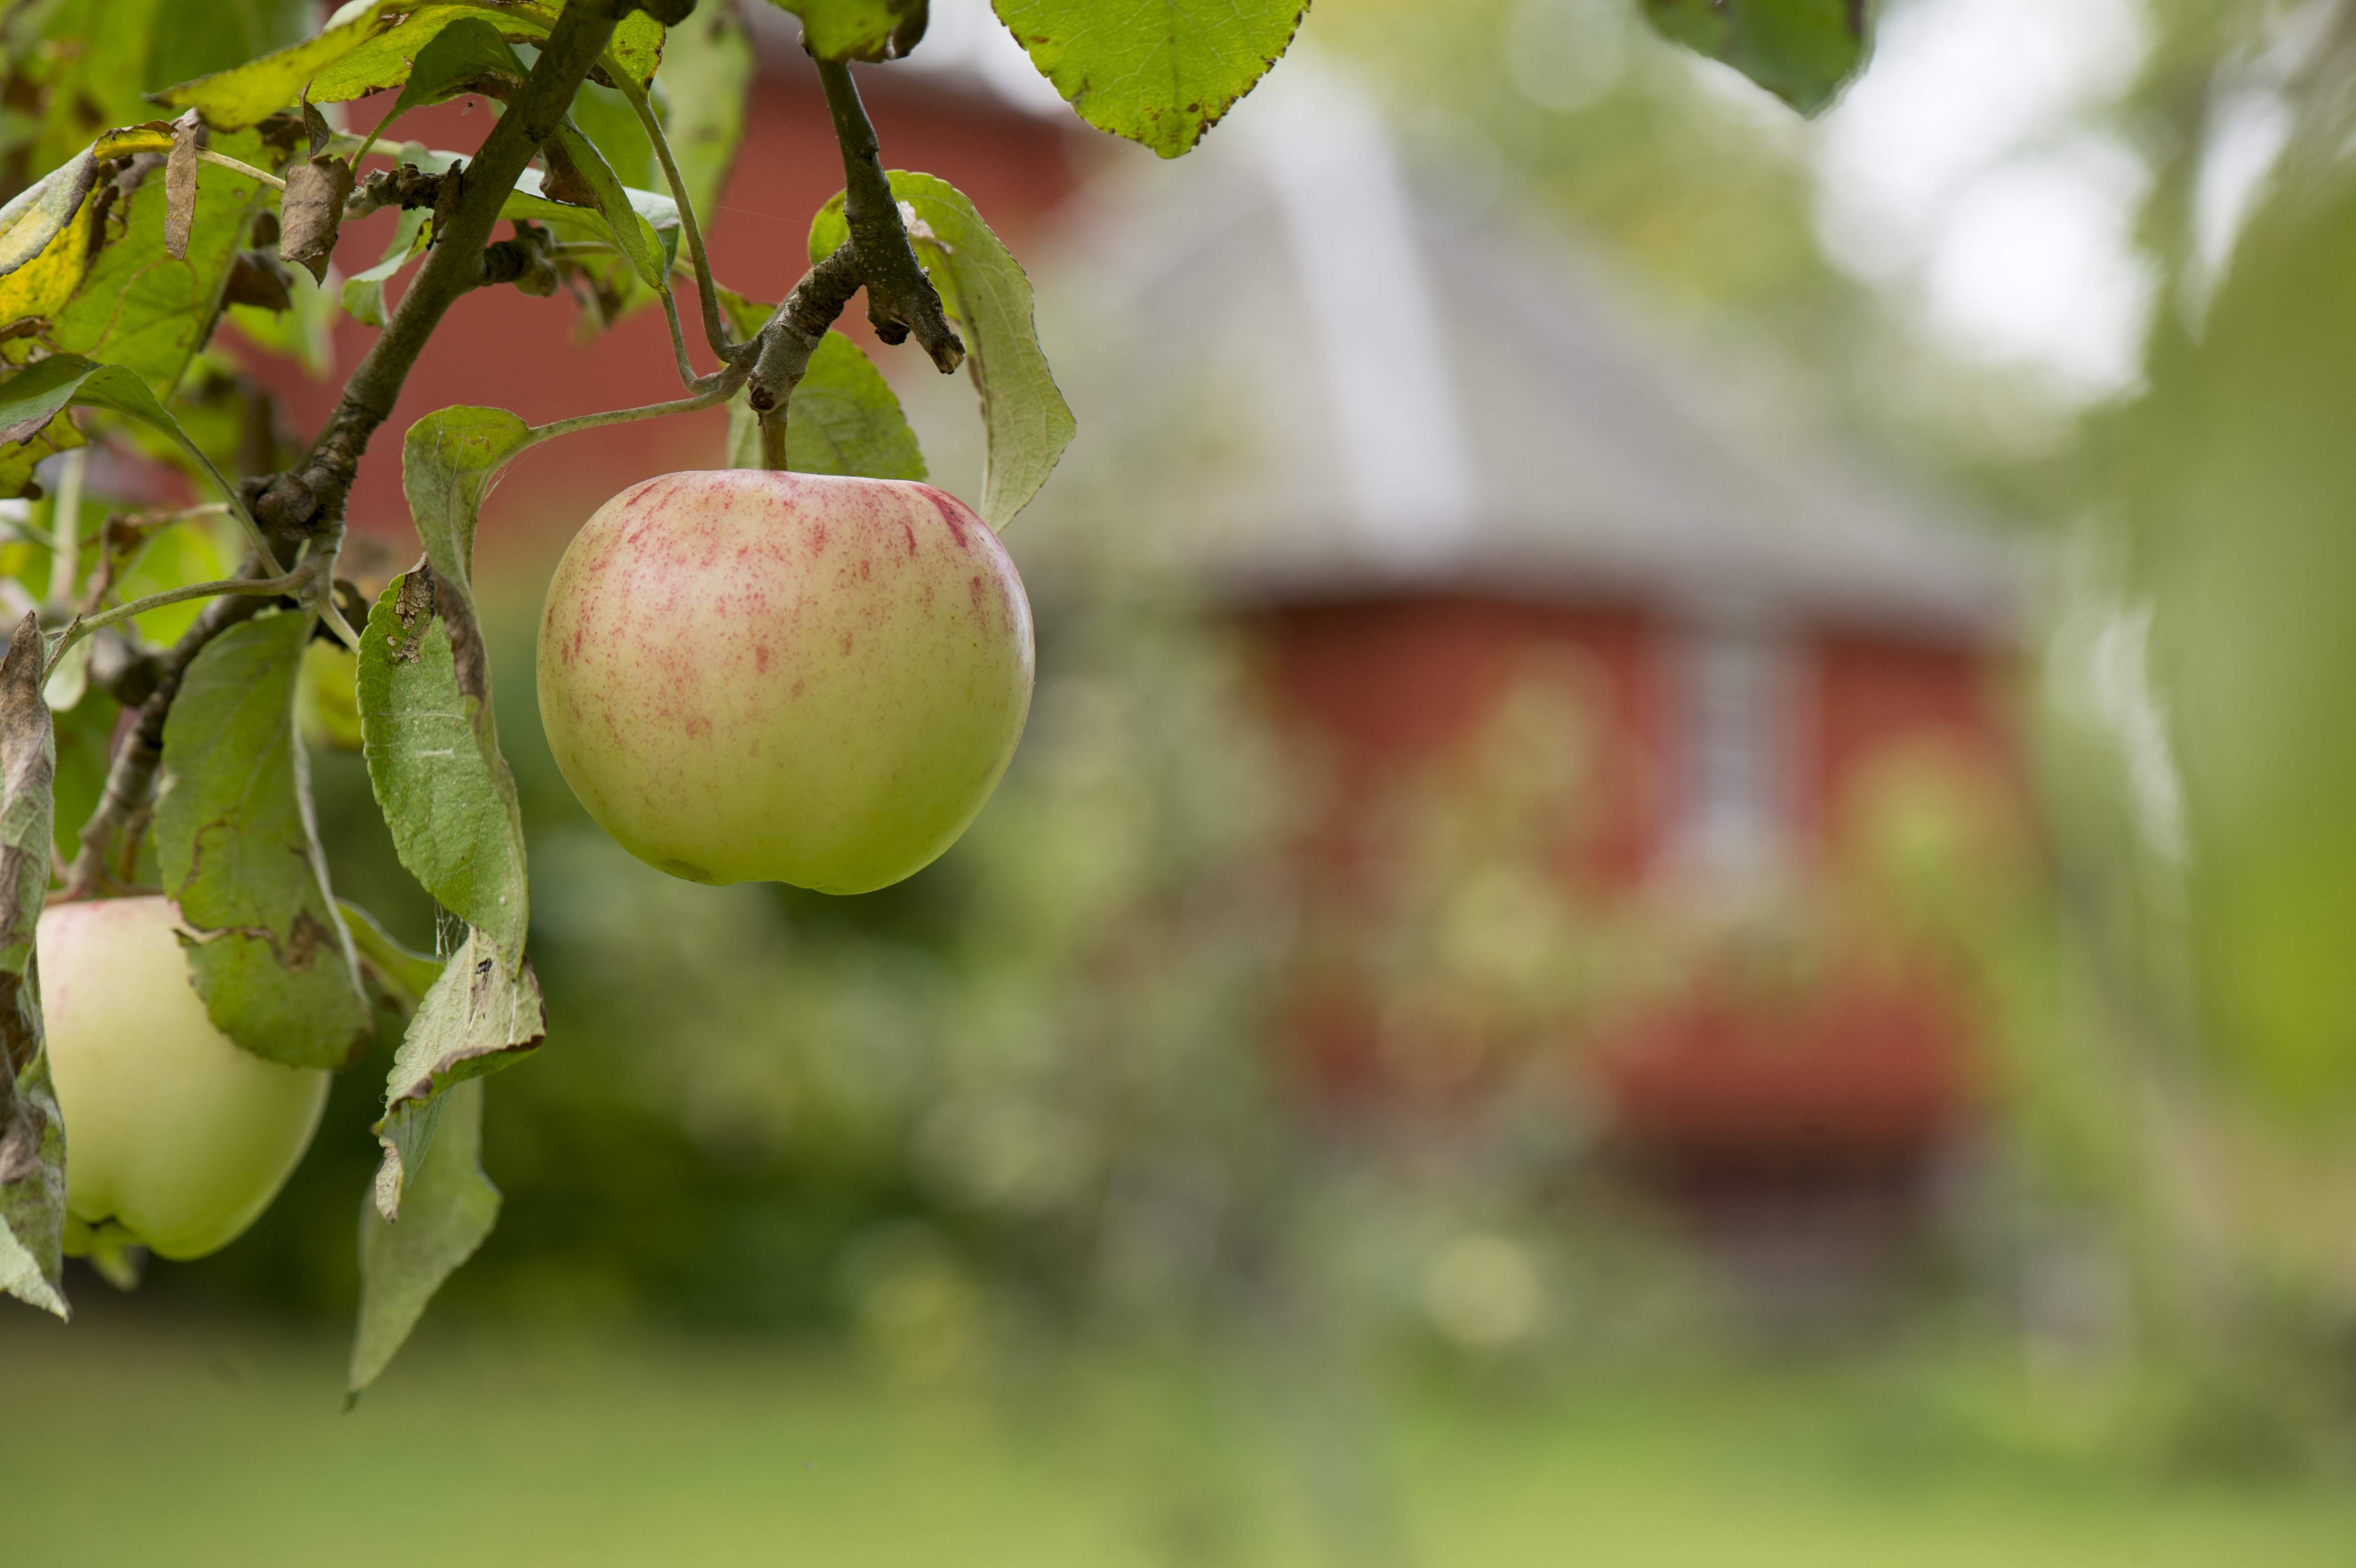 von Echstedtska gården, foto Lars Sjöqvist, äppleträd med utedass i bakgrund